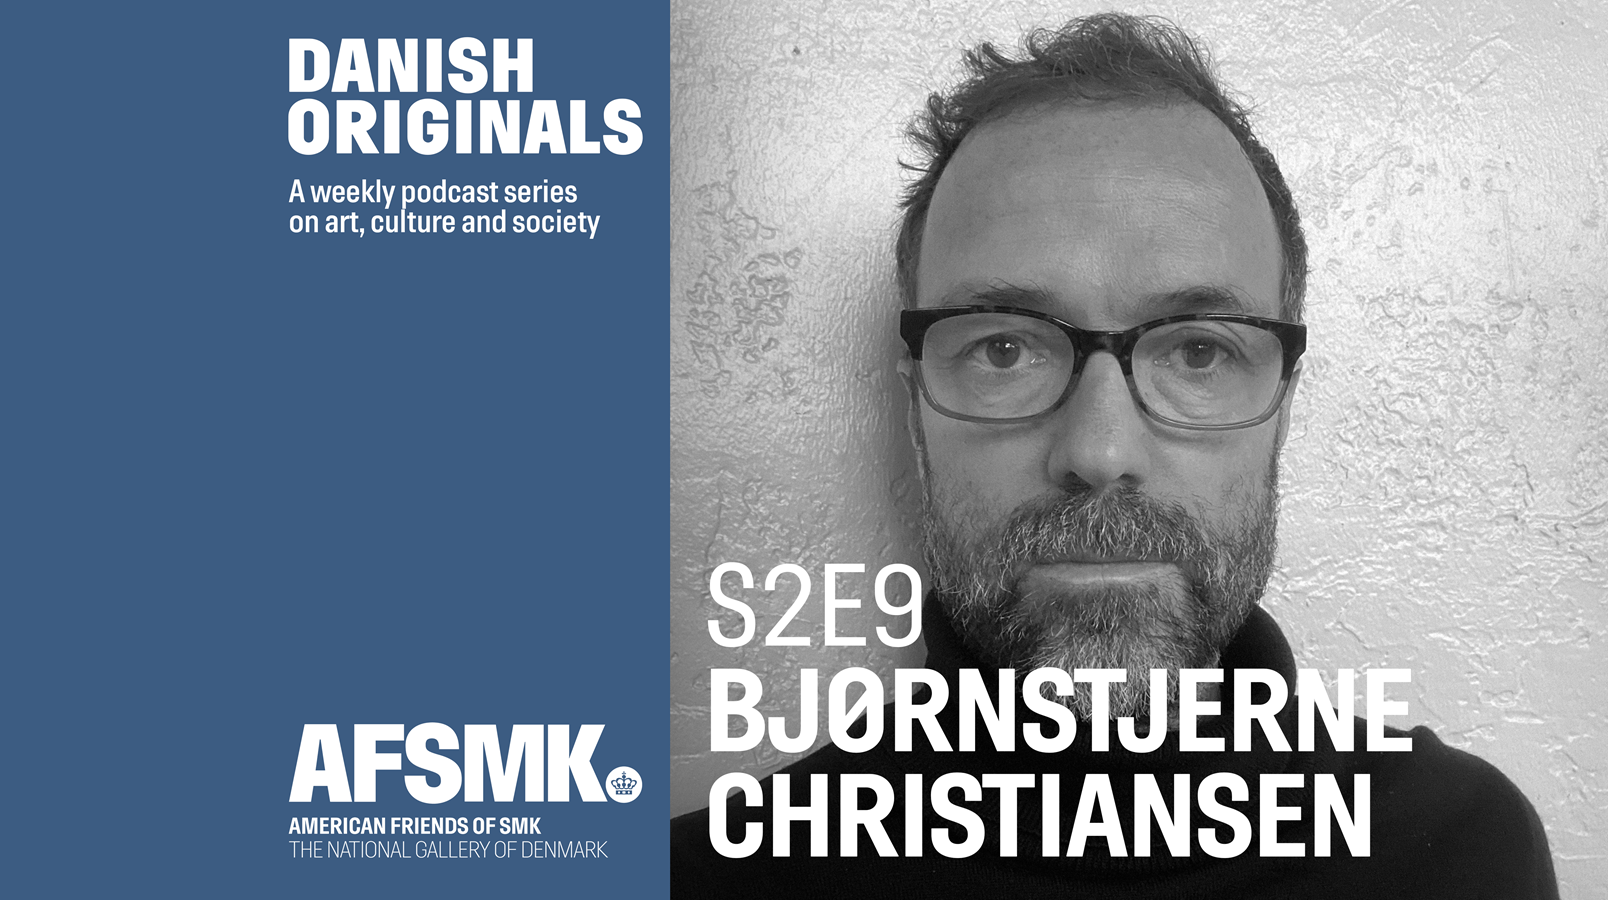 Danish Originals S2E9: Bjørnstjerne Christiansen